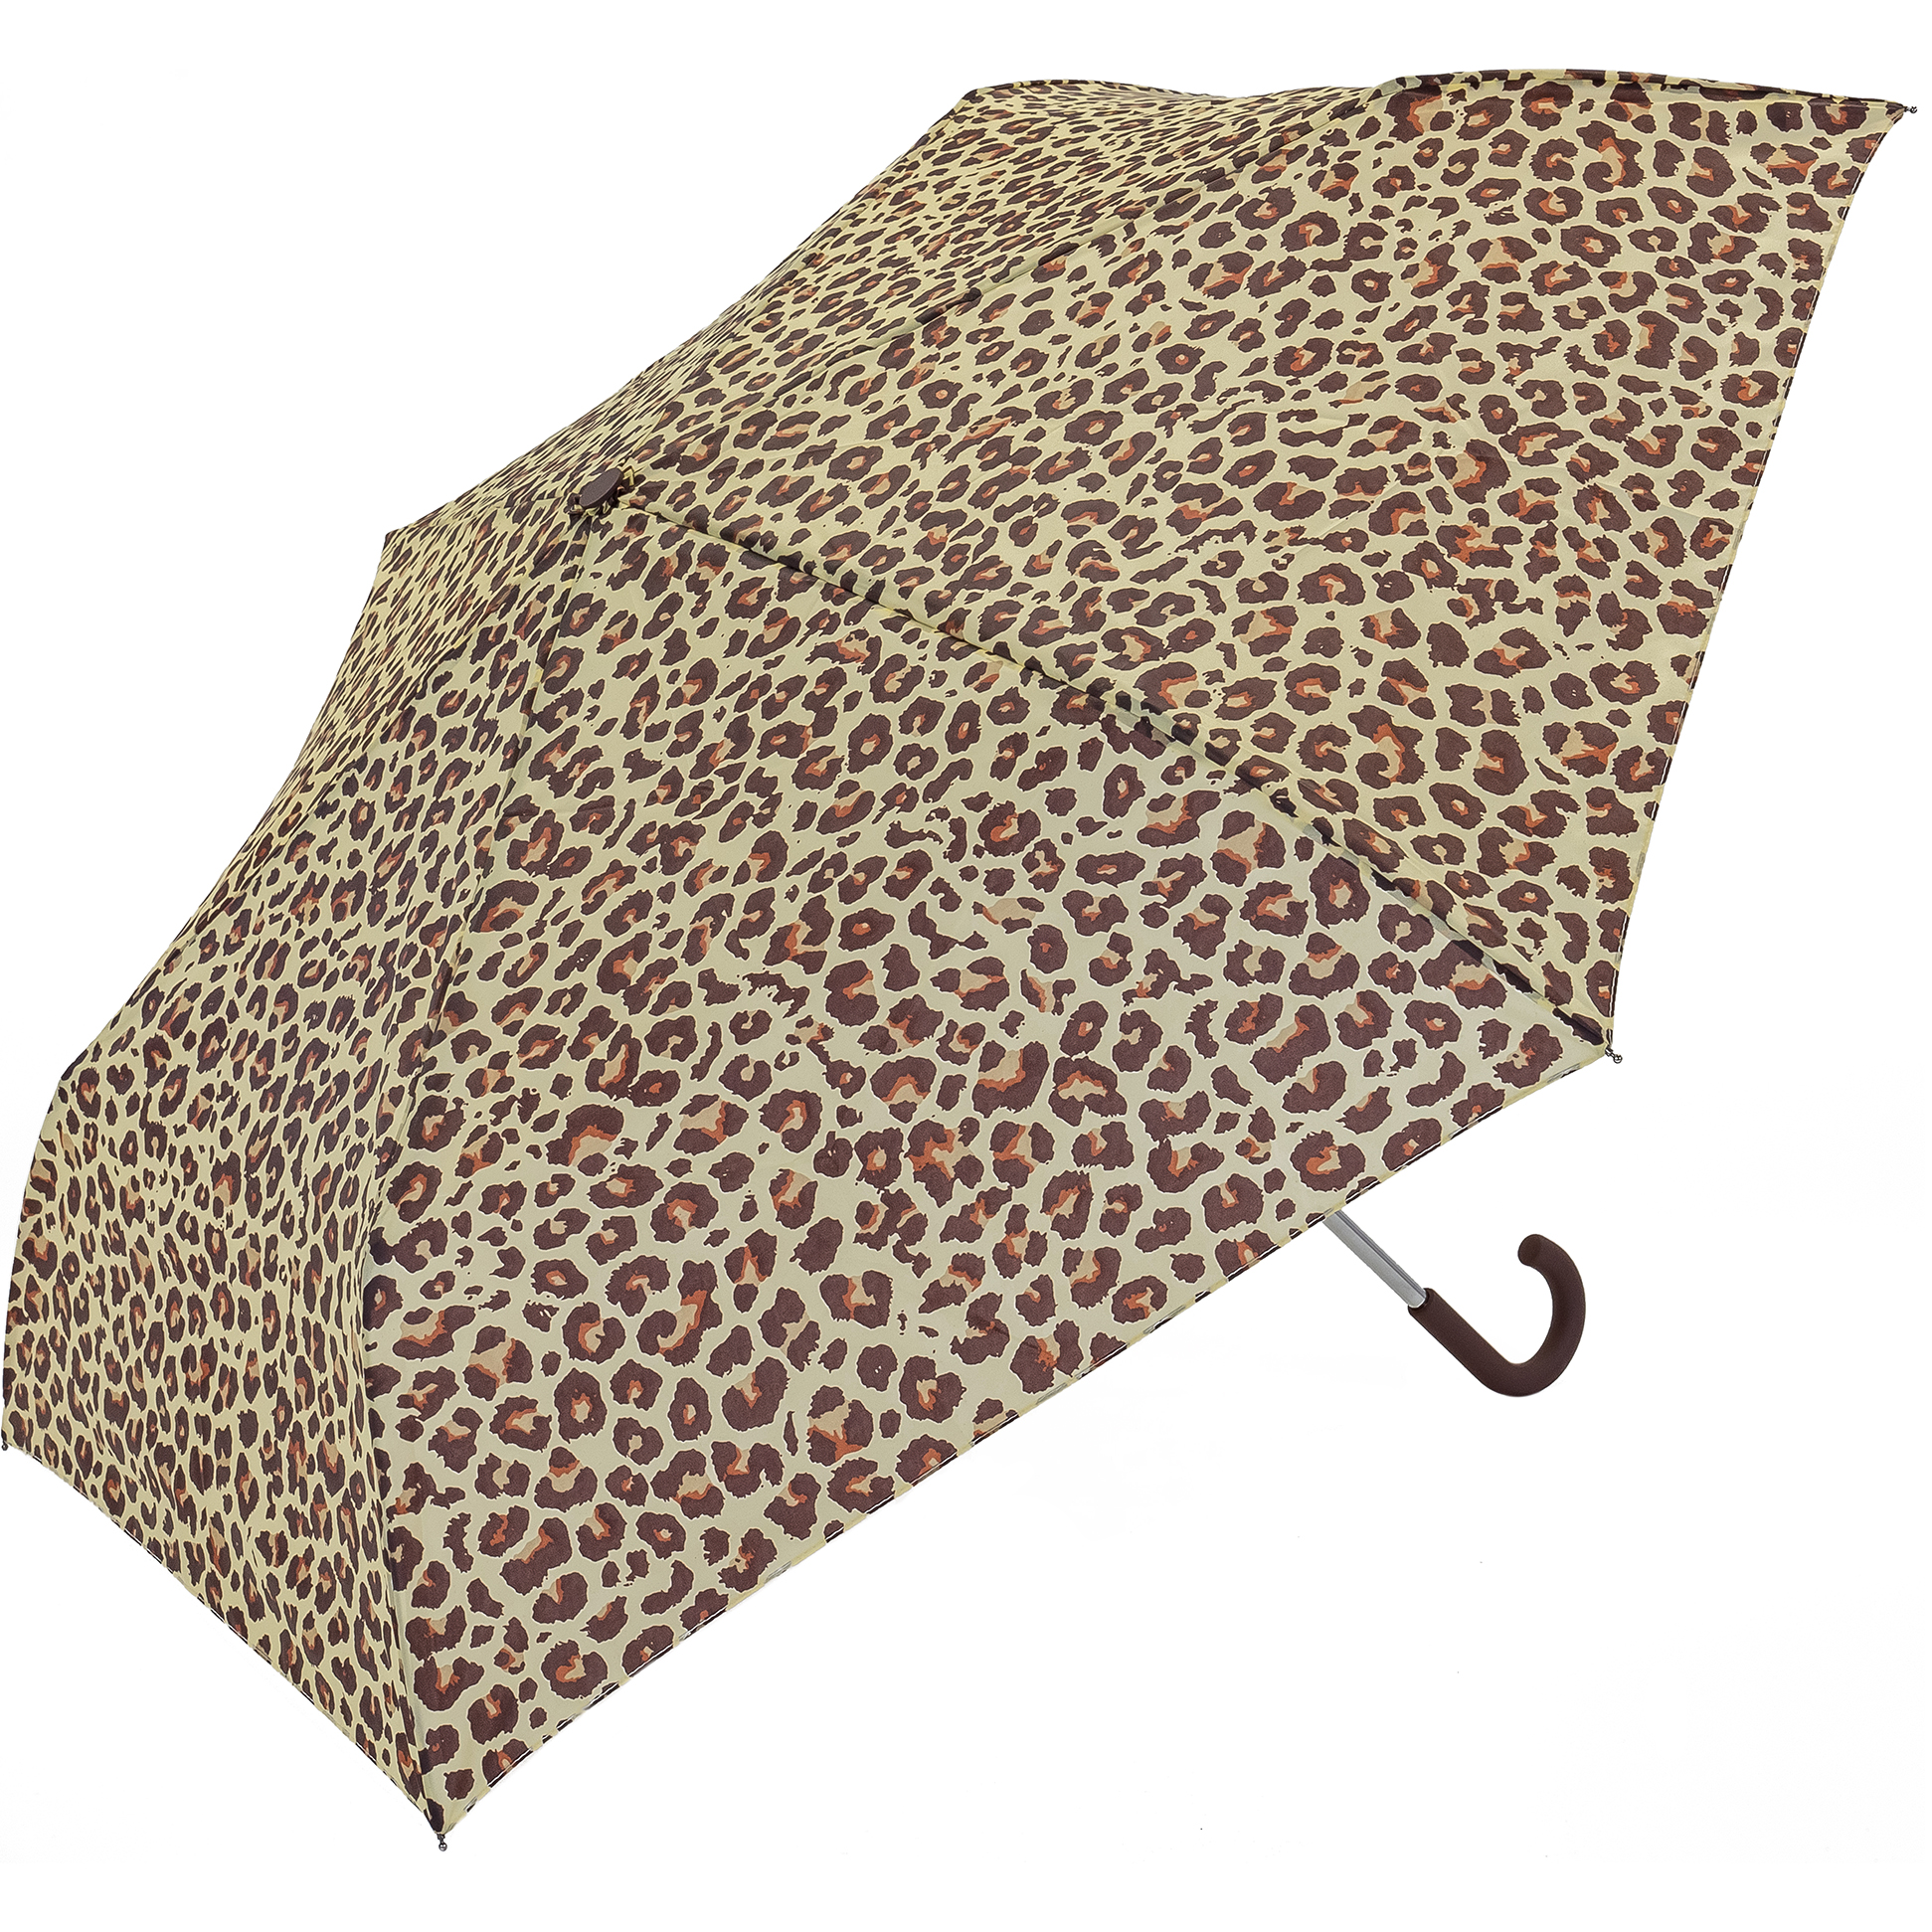 Leopard Crook Handle Umbrella (31906)